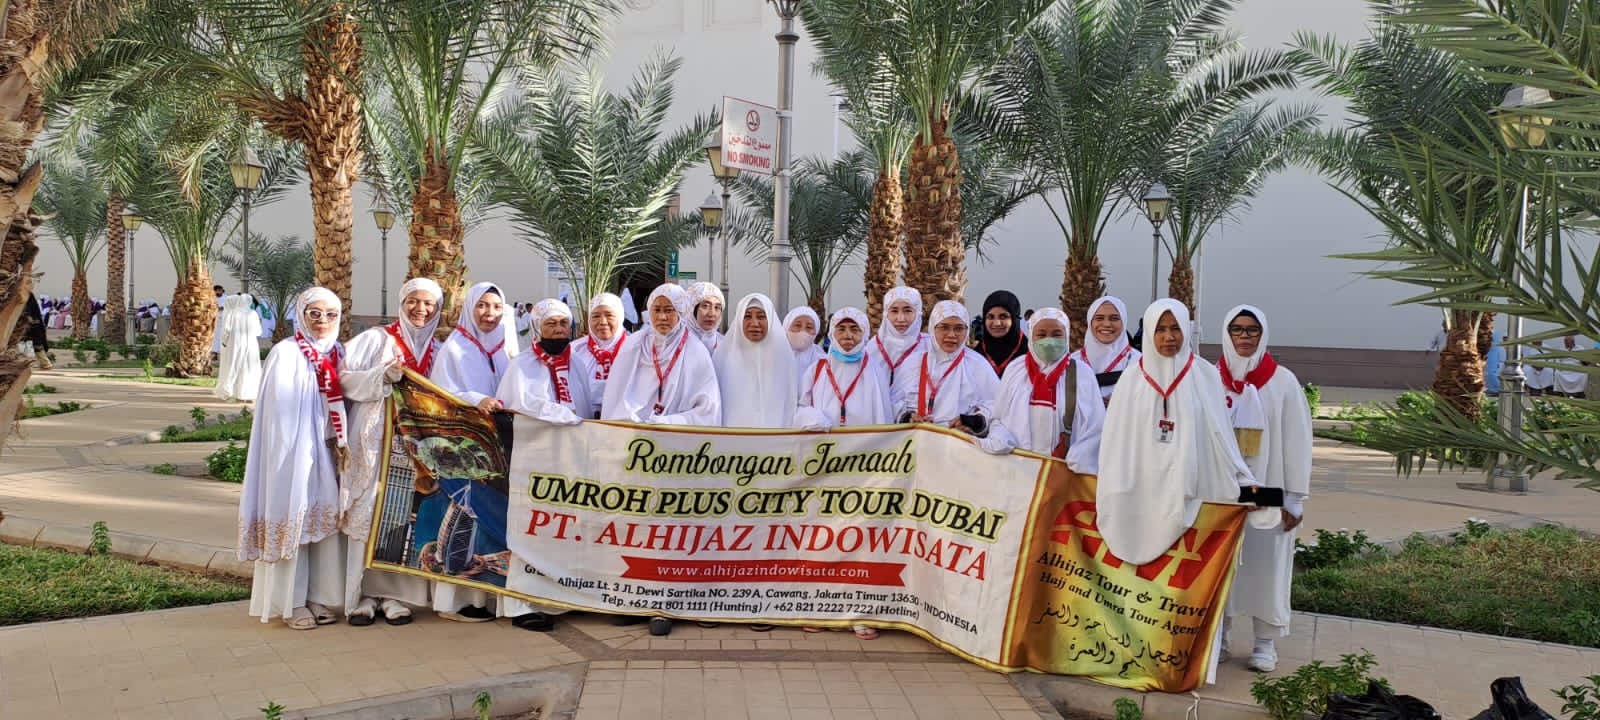 Daftar Umroh Dan Haji Plus Murah  Jakarta Selatan